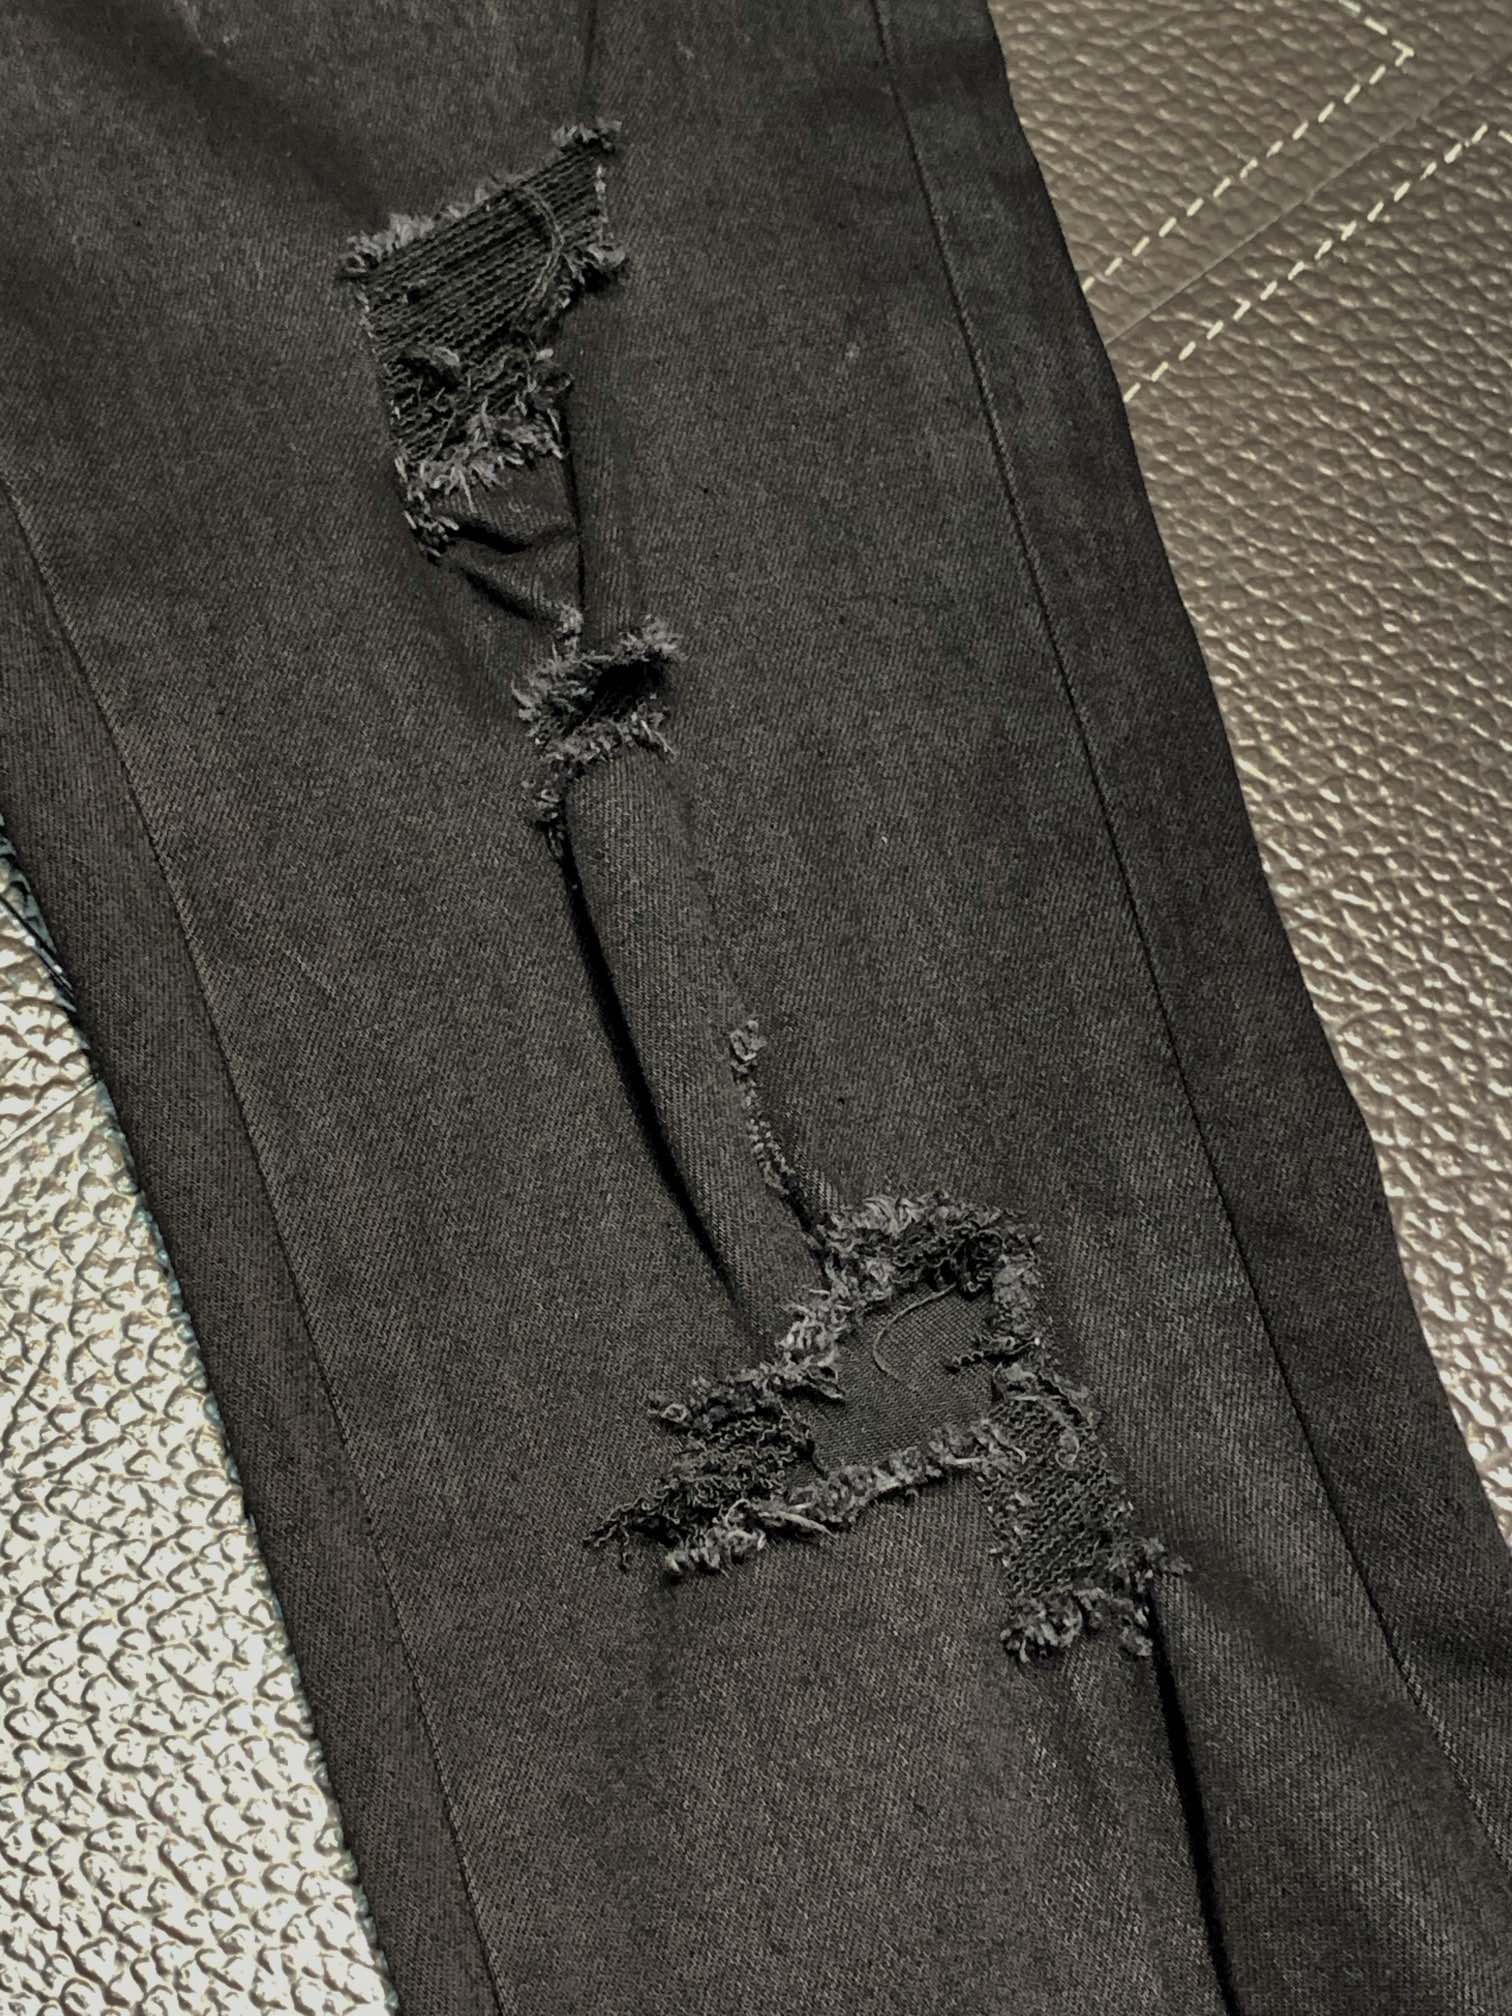 アミリ今季セール限定品 8ジーンズ偽物 カジュアルズボン ファッション デニム 美脚 ブラック_5